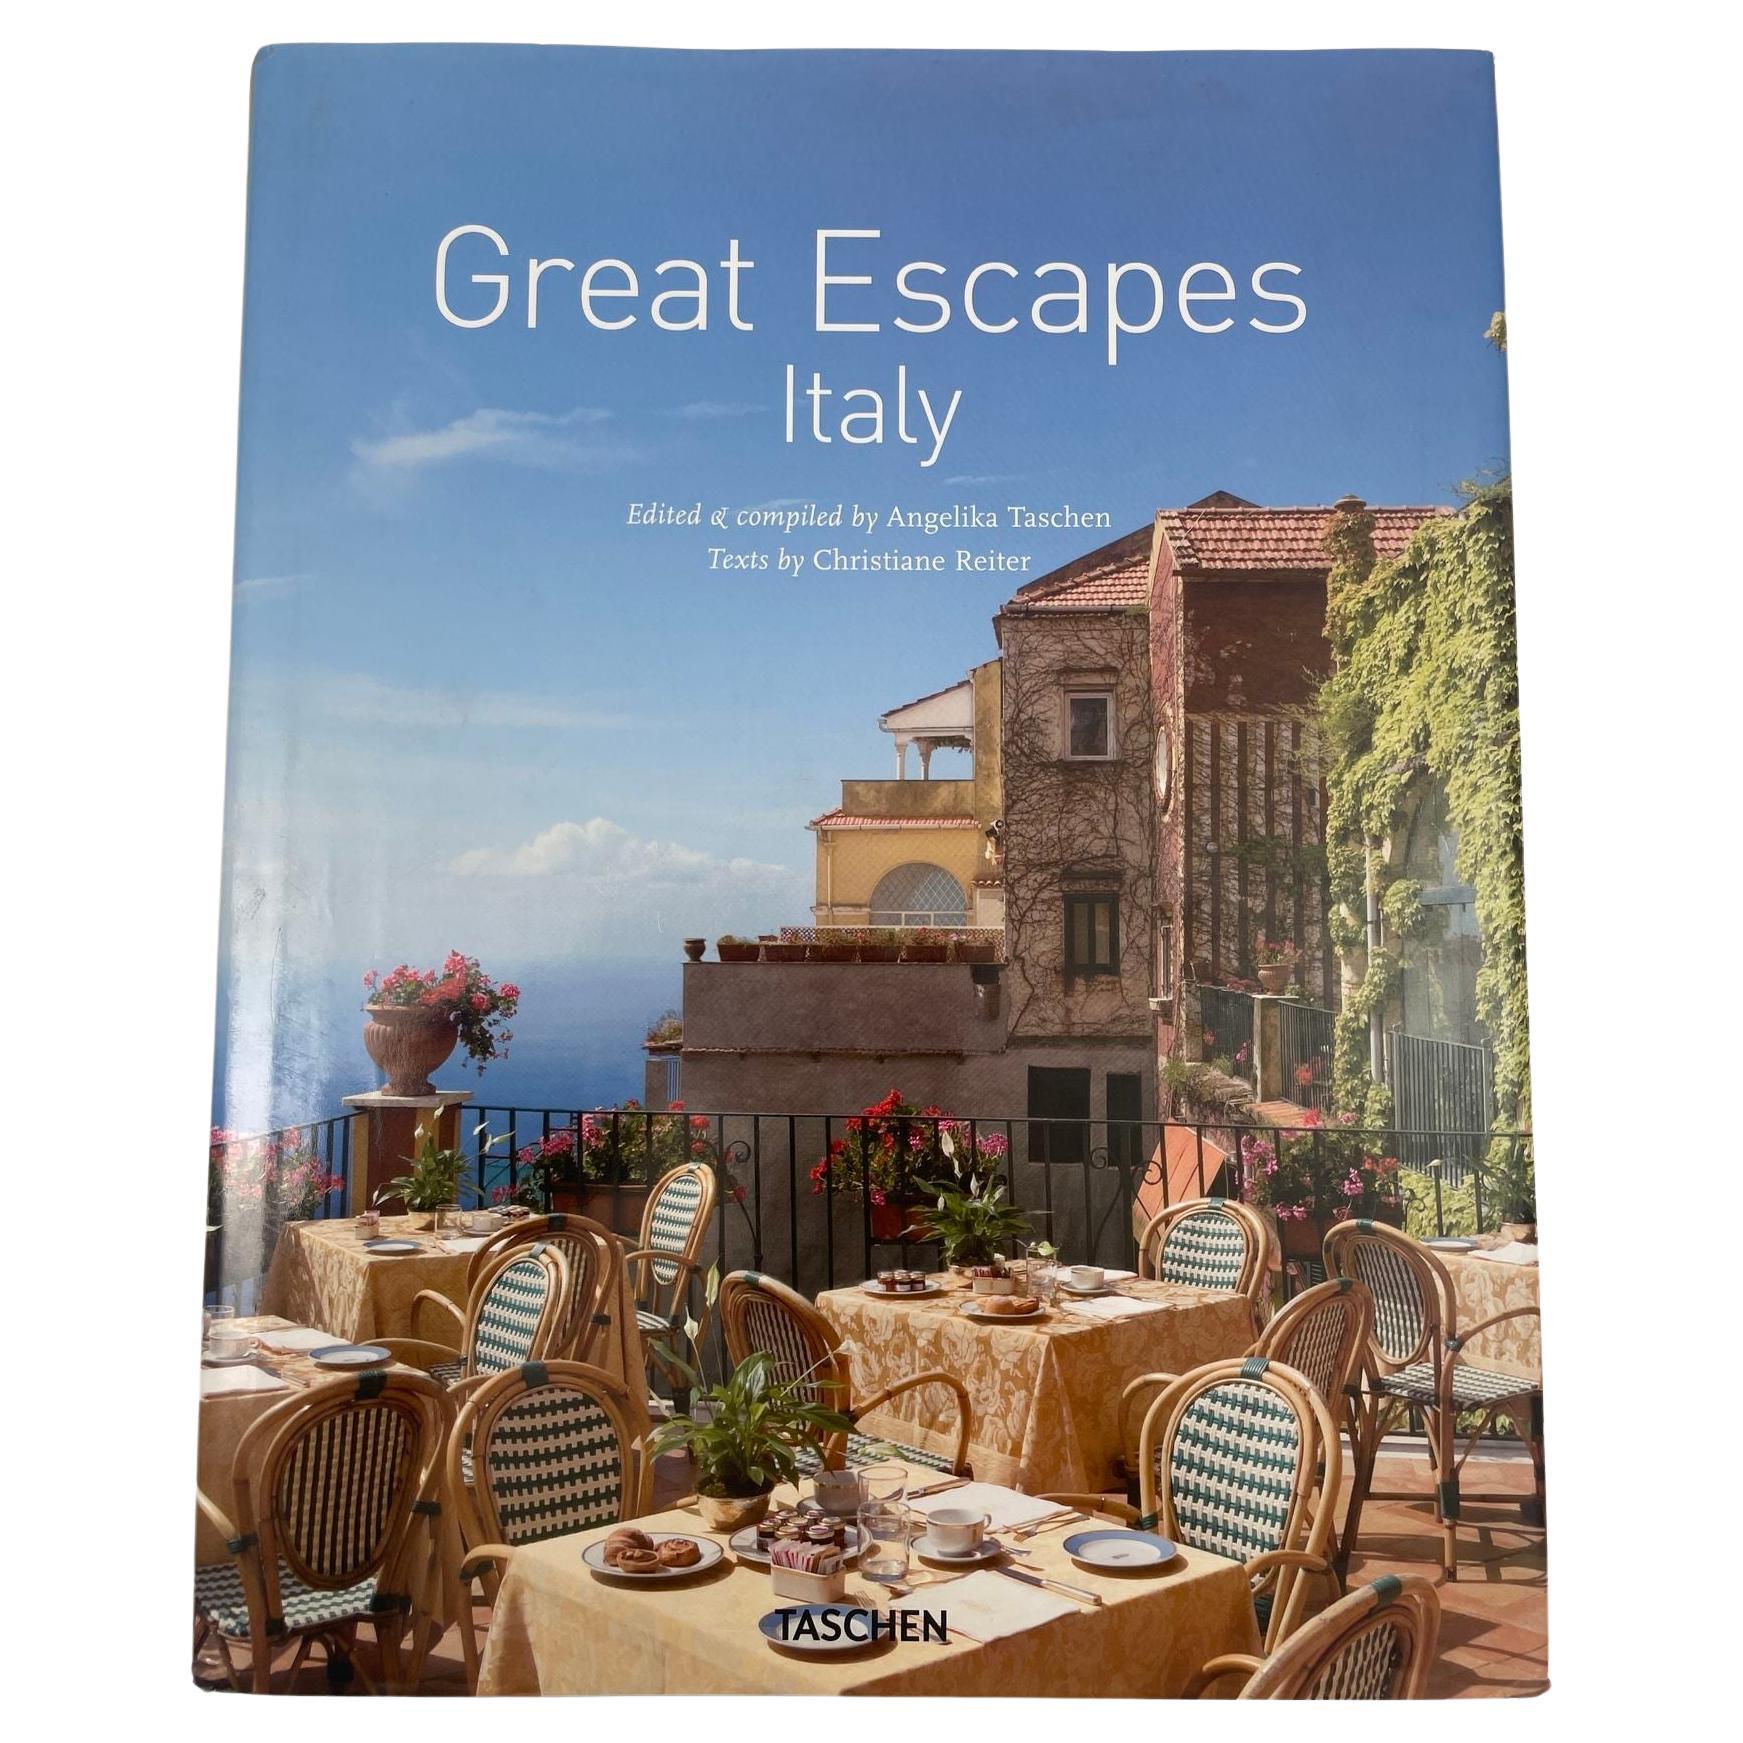 Große Escapes: Italy Angelika Taschen und Christiane Reiter, Hardcoverbuch